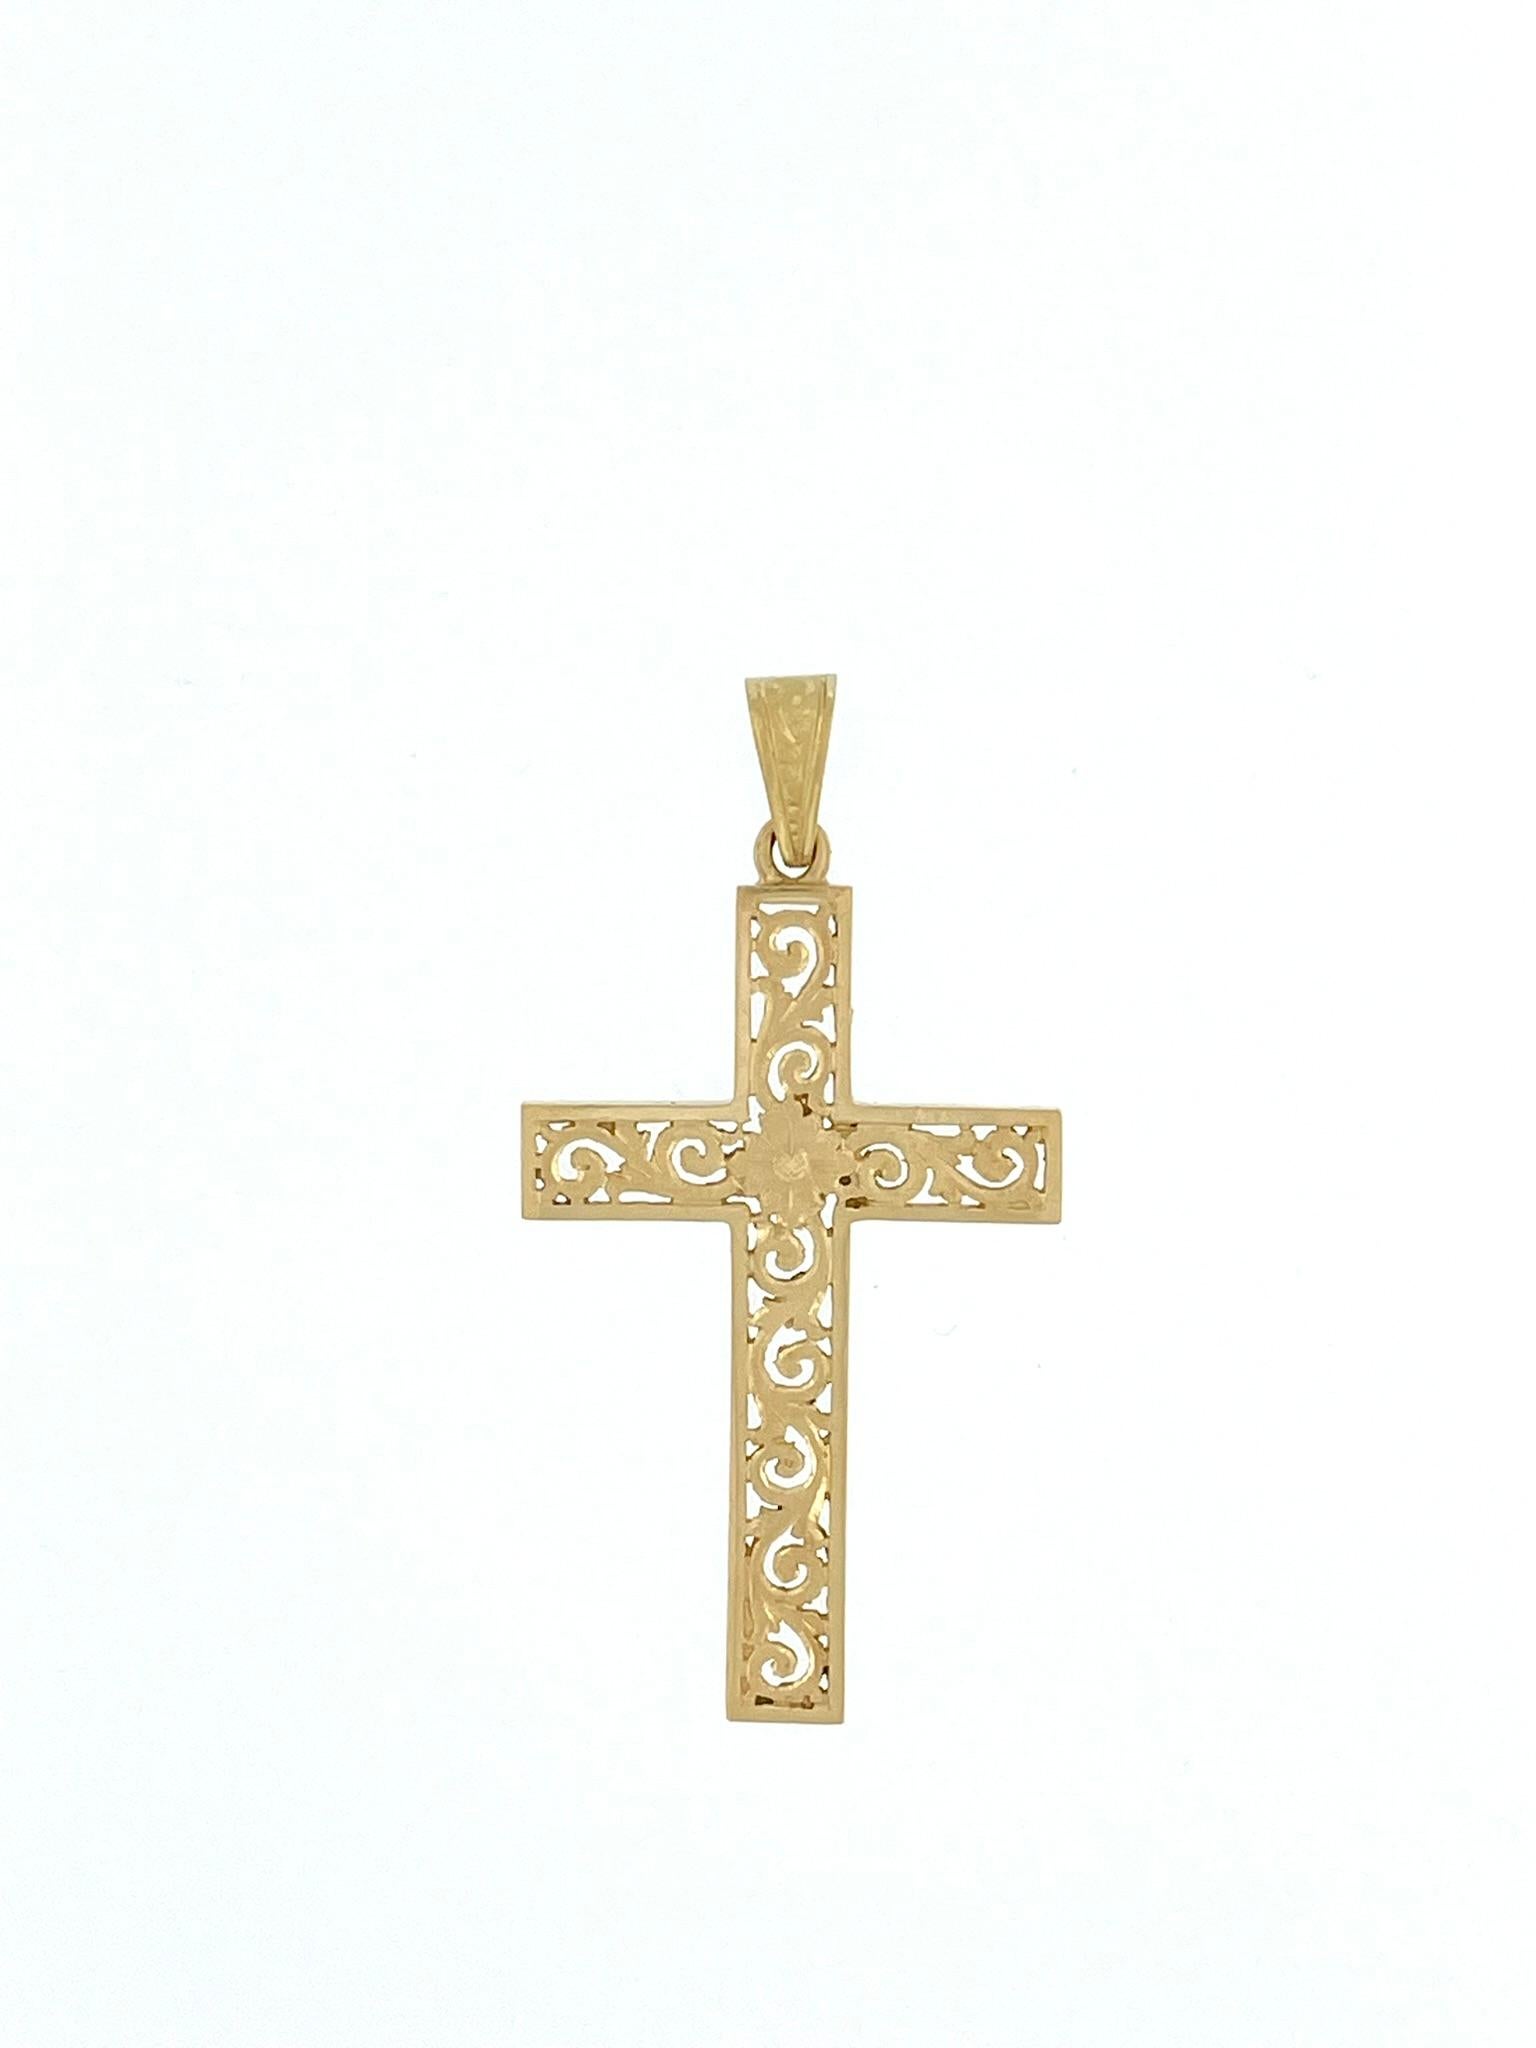 La croix italienne vintage en or jaune 18 carats est un bijou méticuleusement fabriqué qui se caractérise par son design exquis sculpté à la main. La croix est ajourée et présente un arrangement délicat et complexe de fleurs et de feuilles.